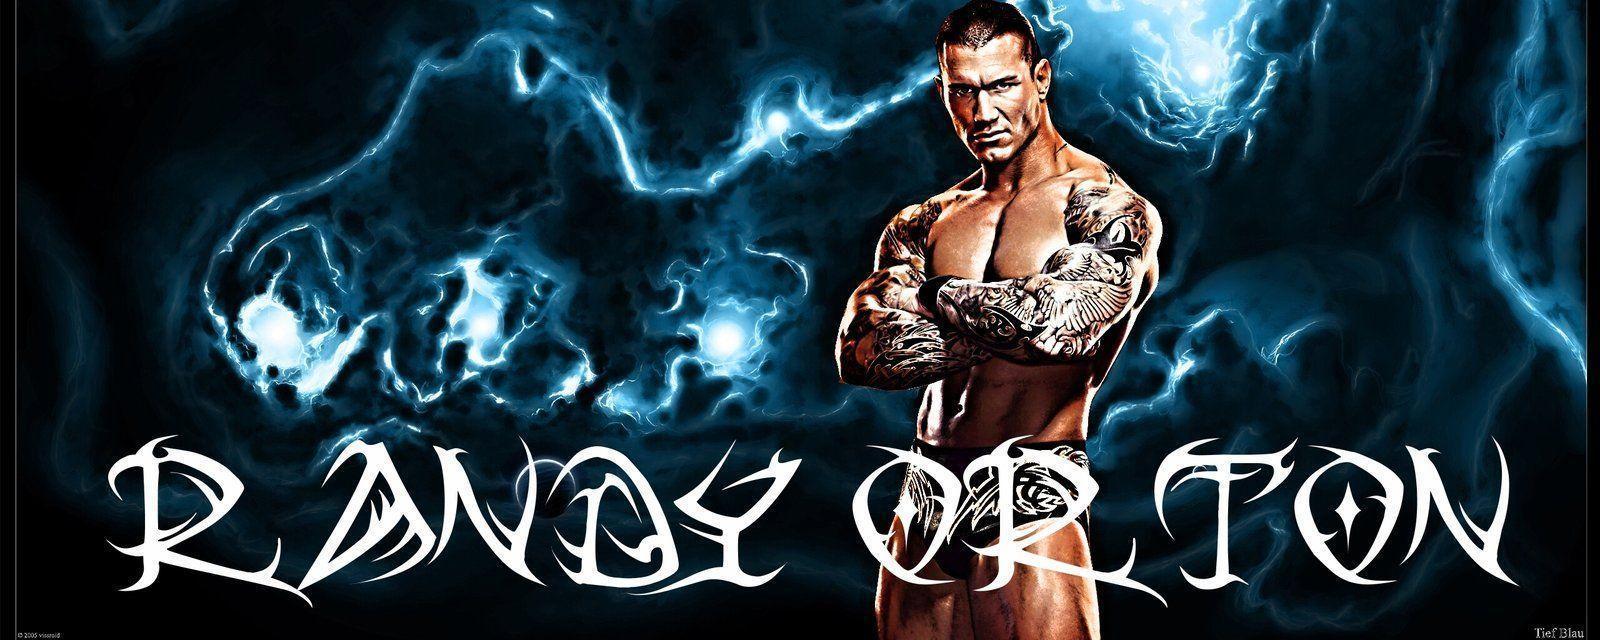 Randy Orton Logo Viper Image & Picture